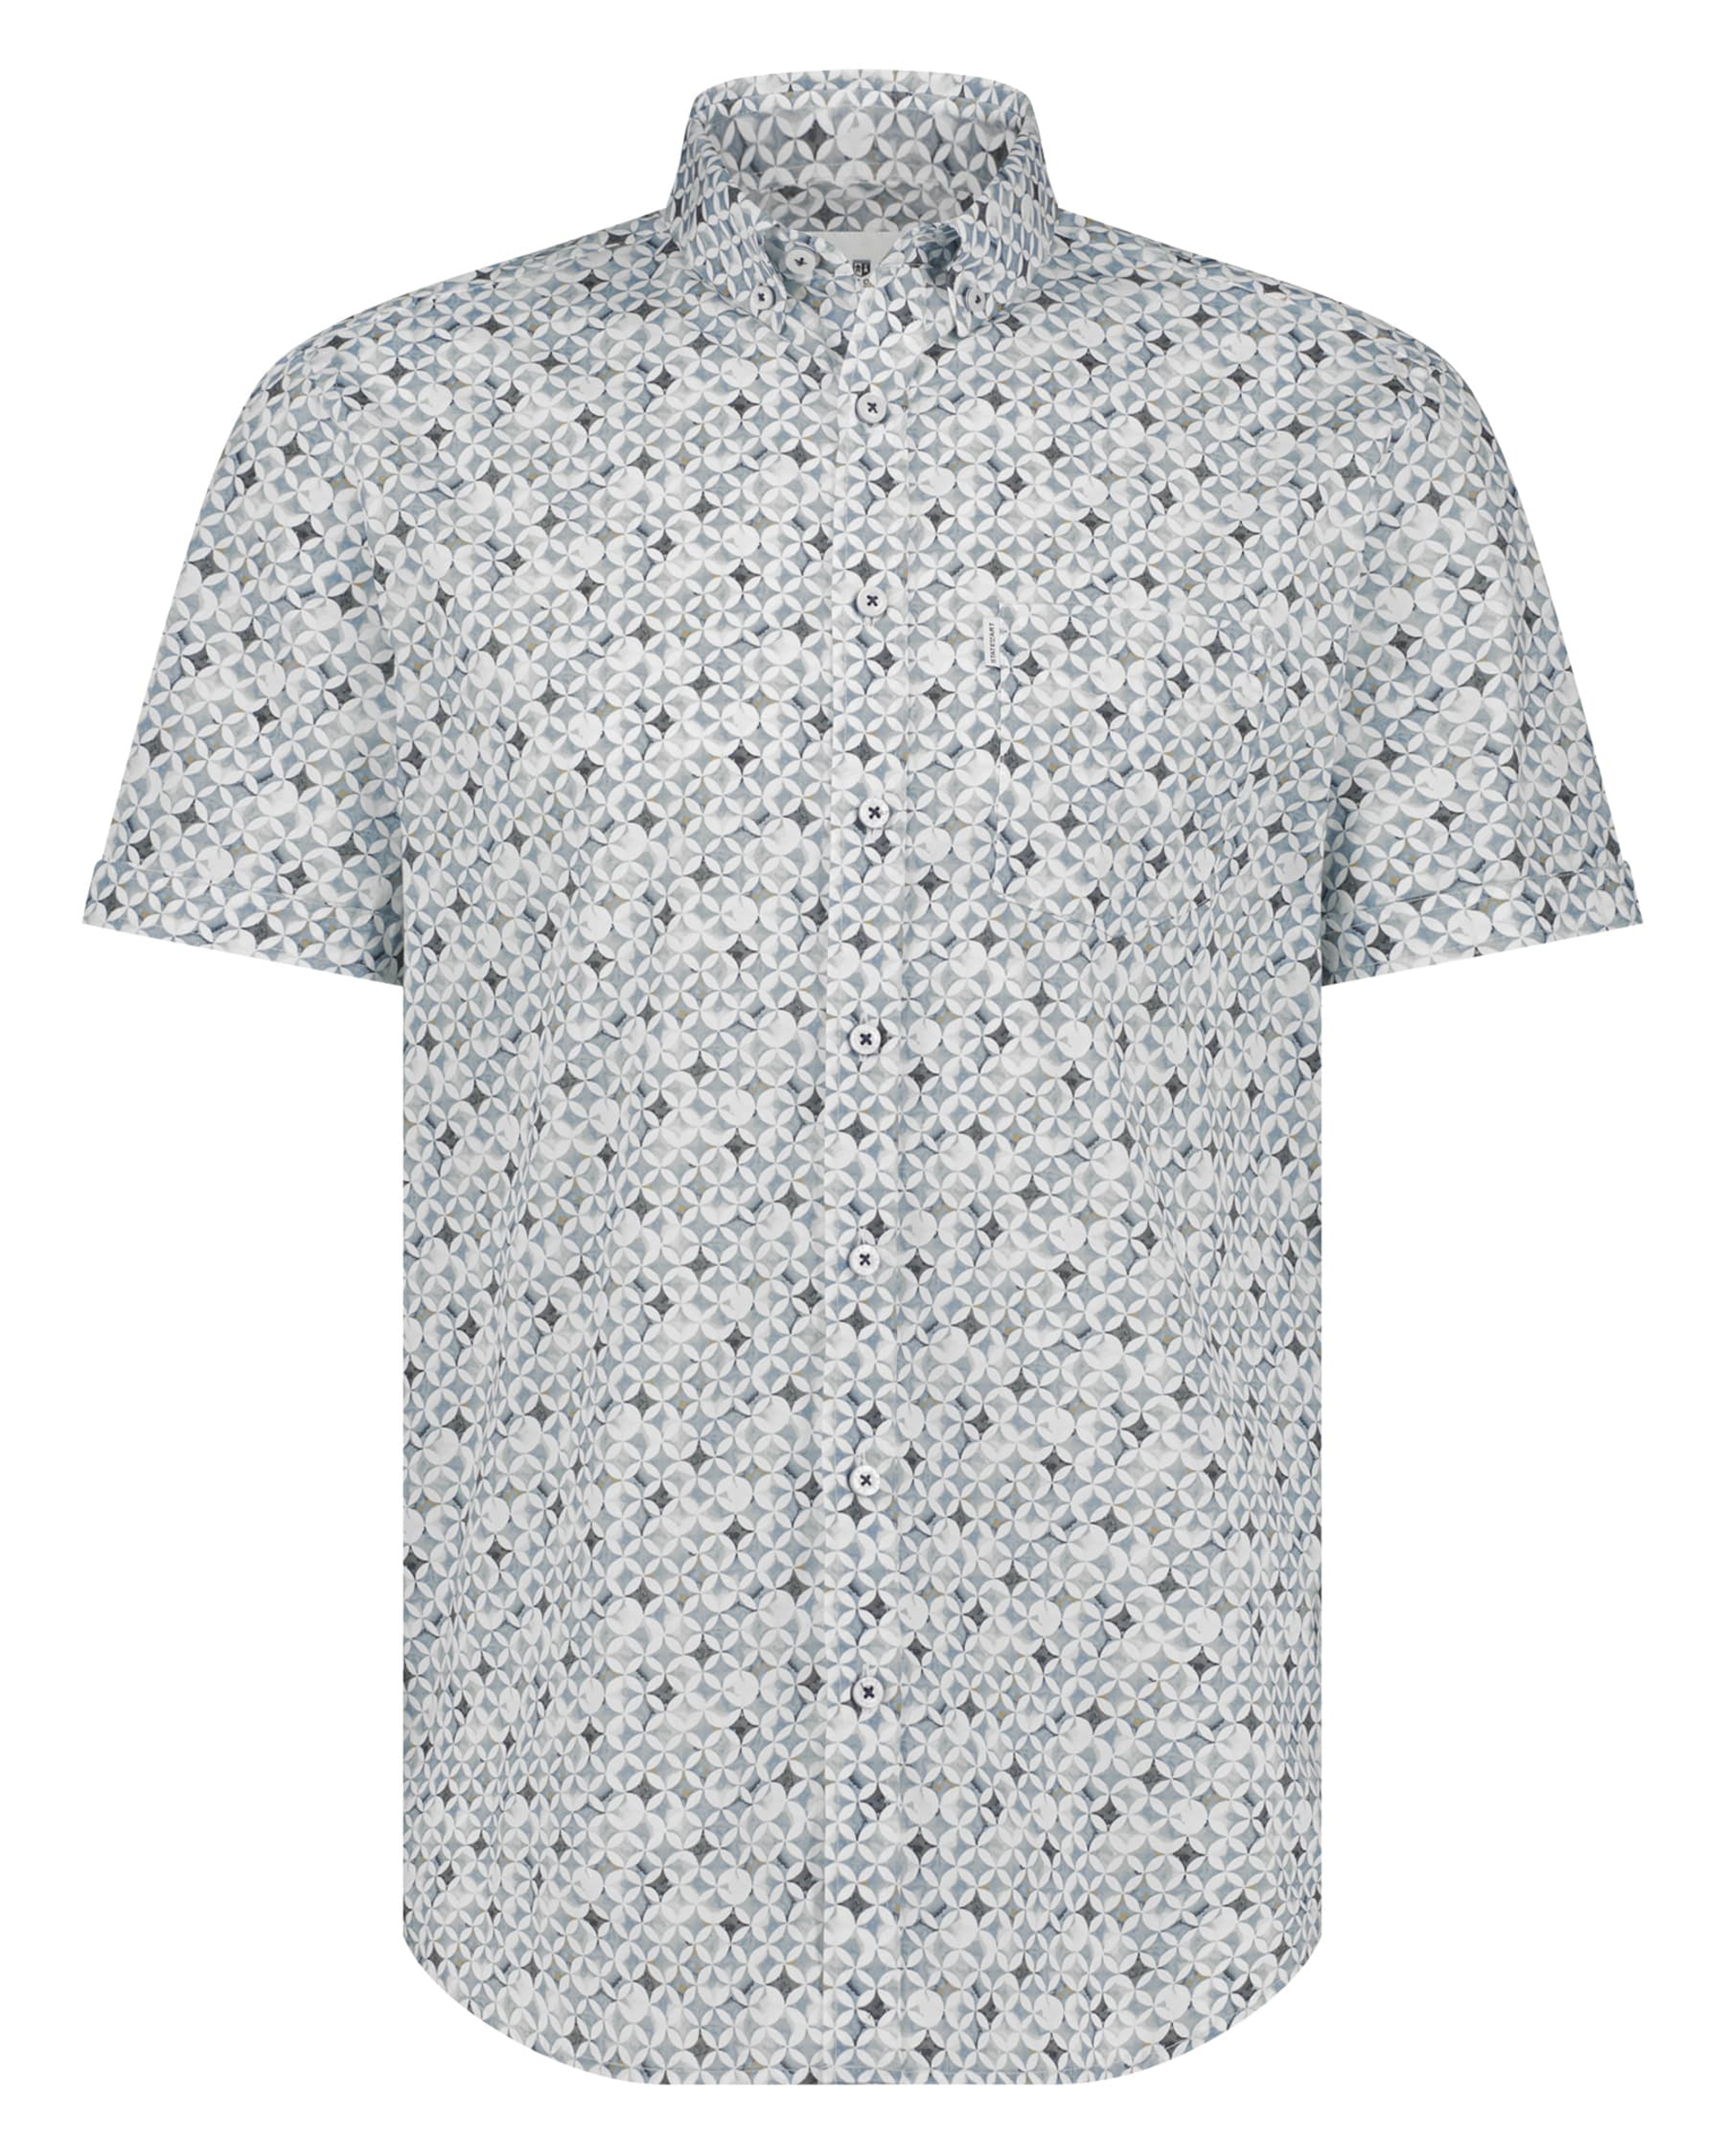 State of Art regular fit overhemd met all over print wit.grijsblauw